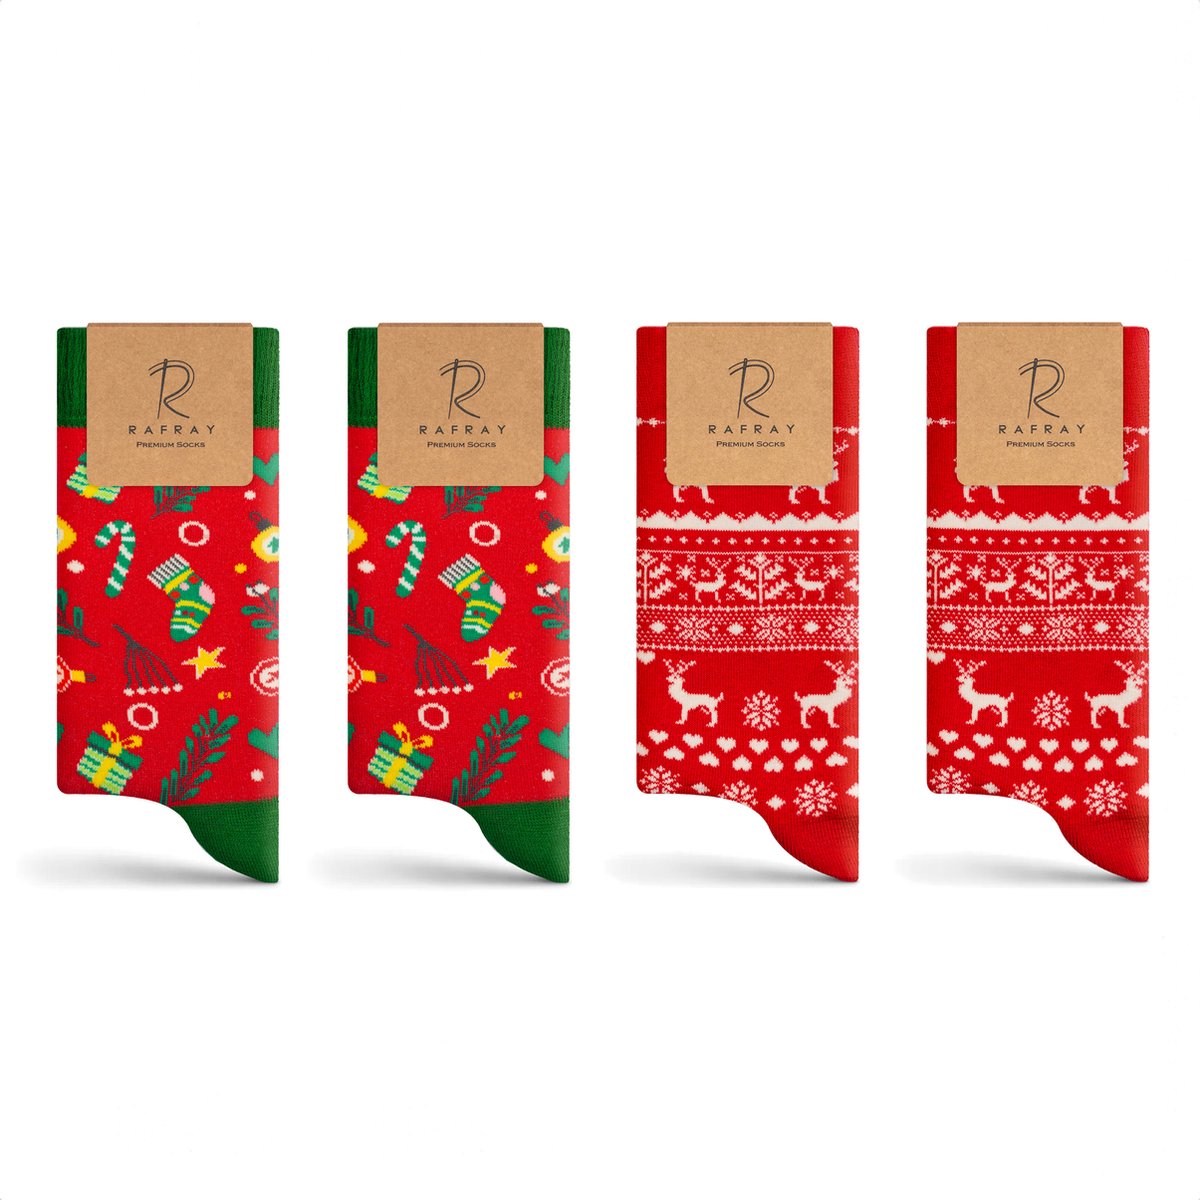 Rafray Socks - Winter Sokken Gift box - Red Deer & Funky Socks - Premium Katoen - 4 paar - Maat 40-44